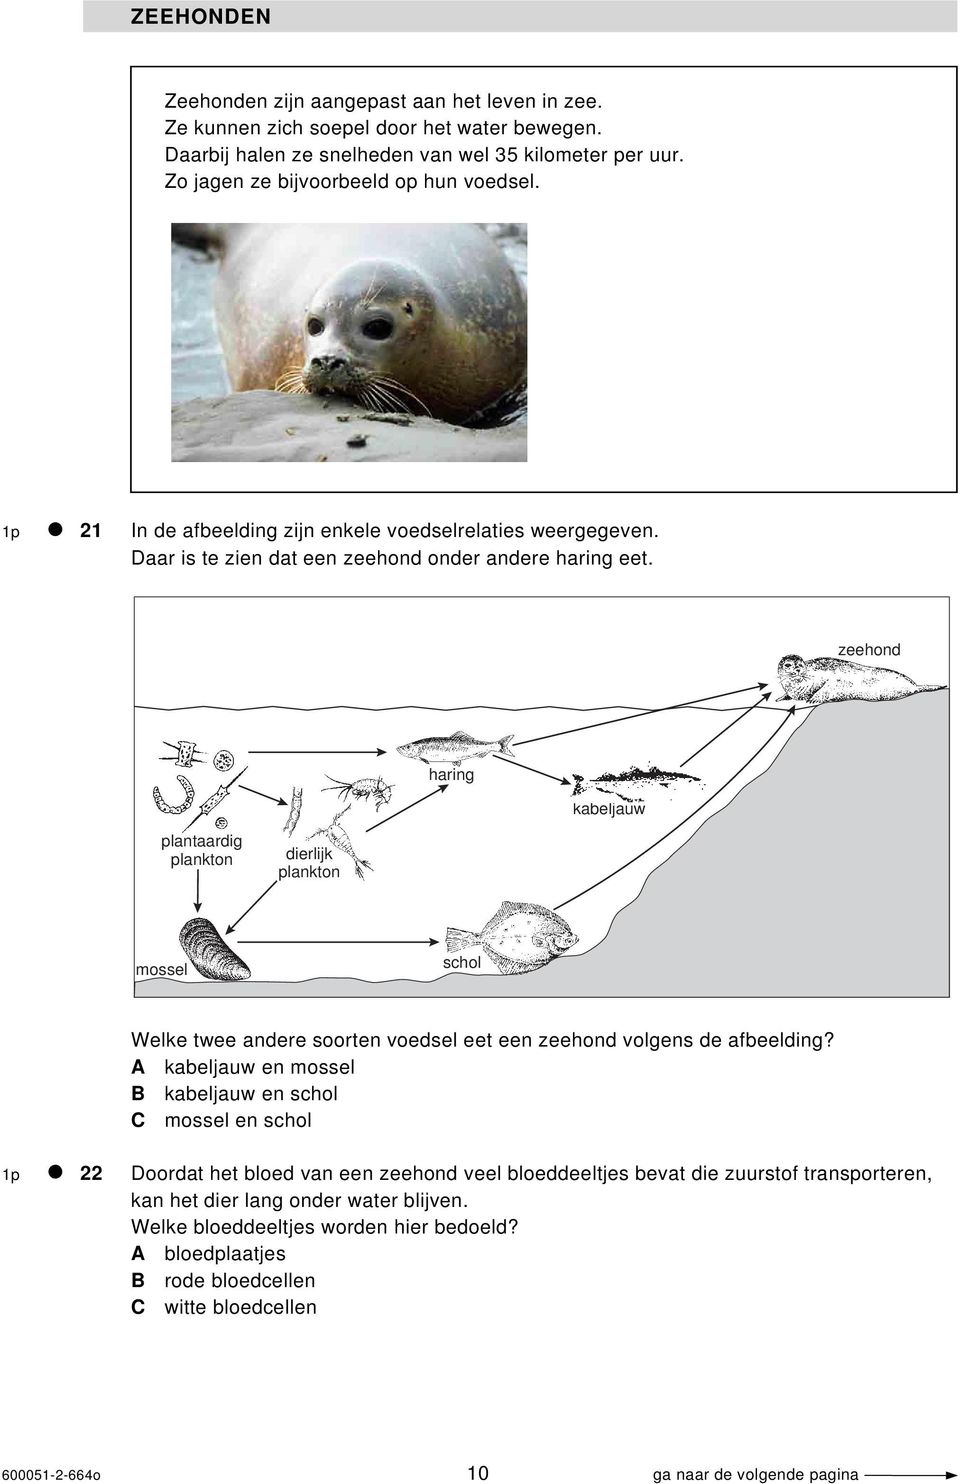 zeehond haring kabeljauw plantaardig plankton dierlijk plankton mossel schol Welke twee andere soorten voedsel eet een zeehond volgens de afbeelding?